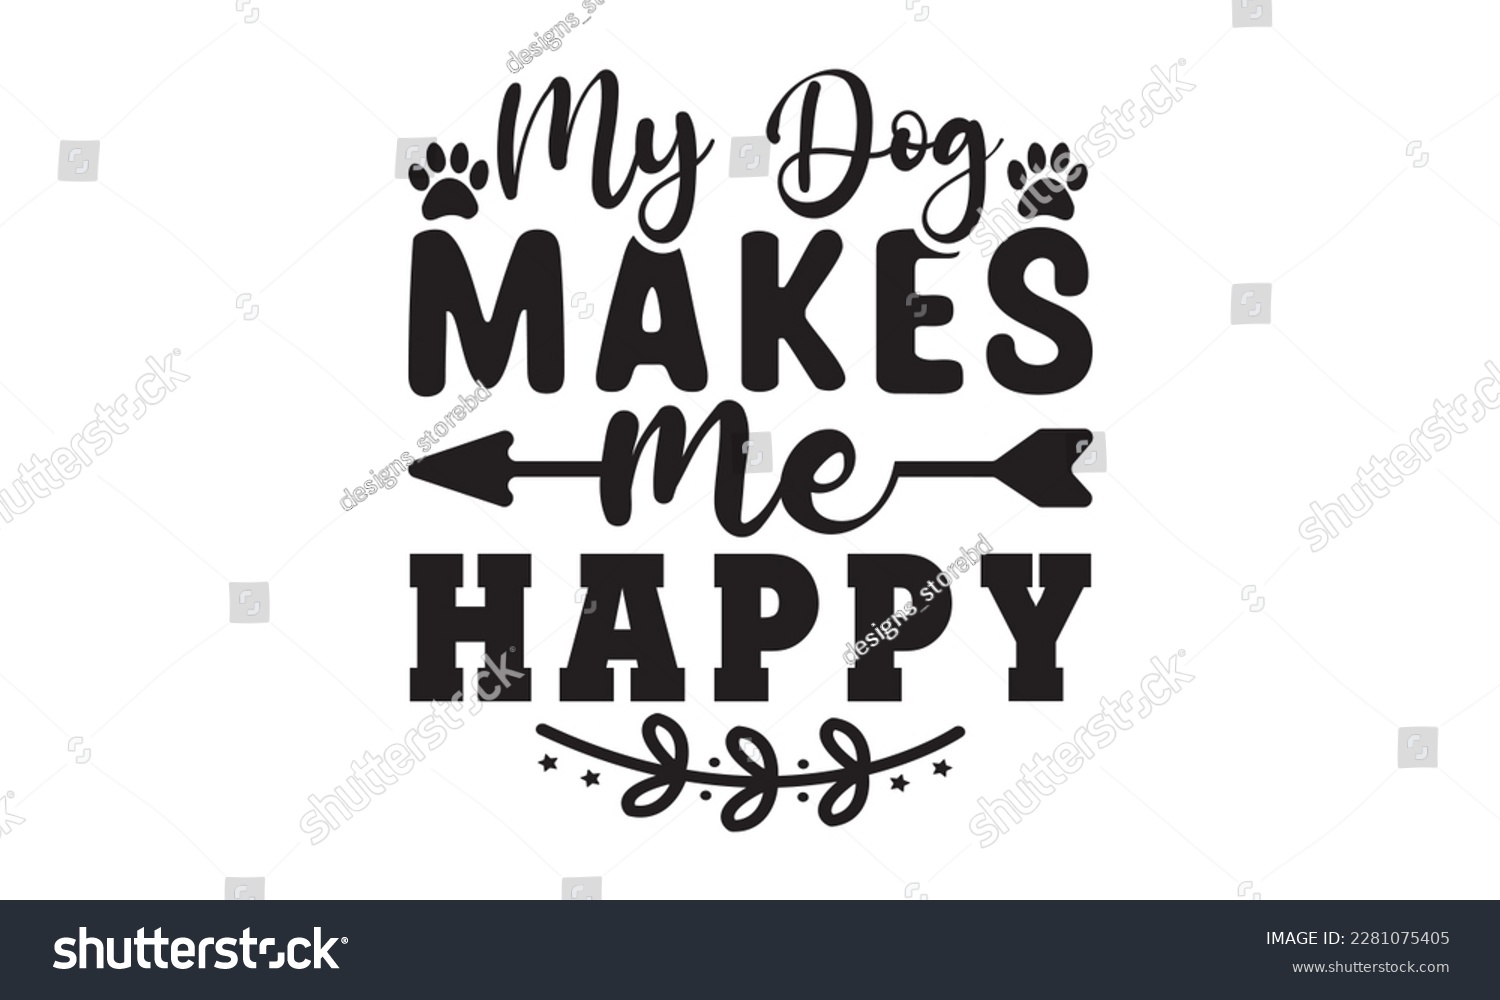 SVG of My dog makes me happy svg ,dog SVG Bundle, dog SVG design bundle and  t-shirt design, Funny Dog Quotes SVG Designs and cut files, fur mom, animal design, animal lover svg